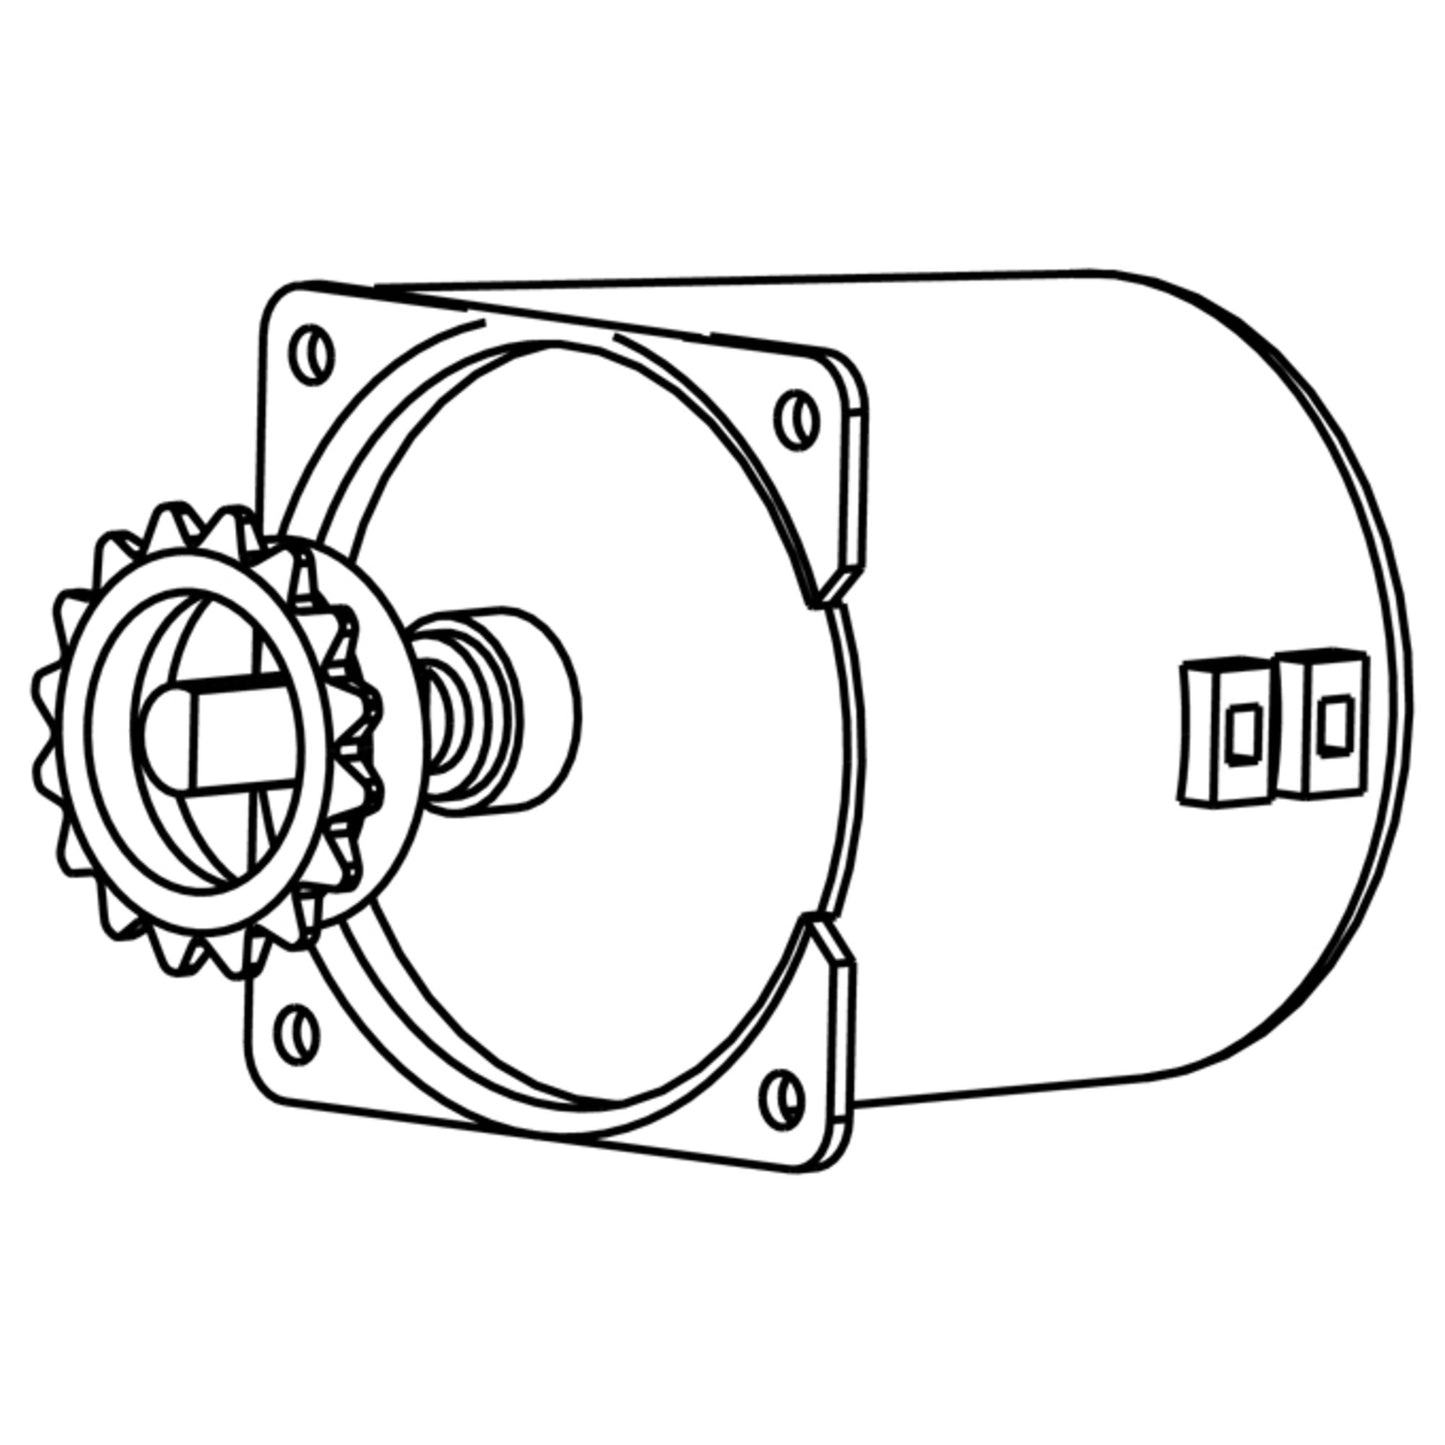 EHDG-P5 - Motor for EHDG